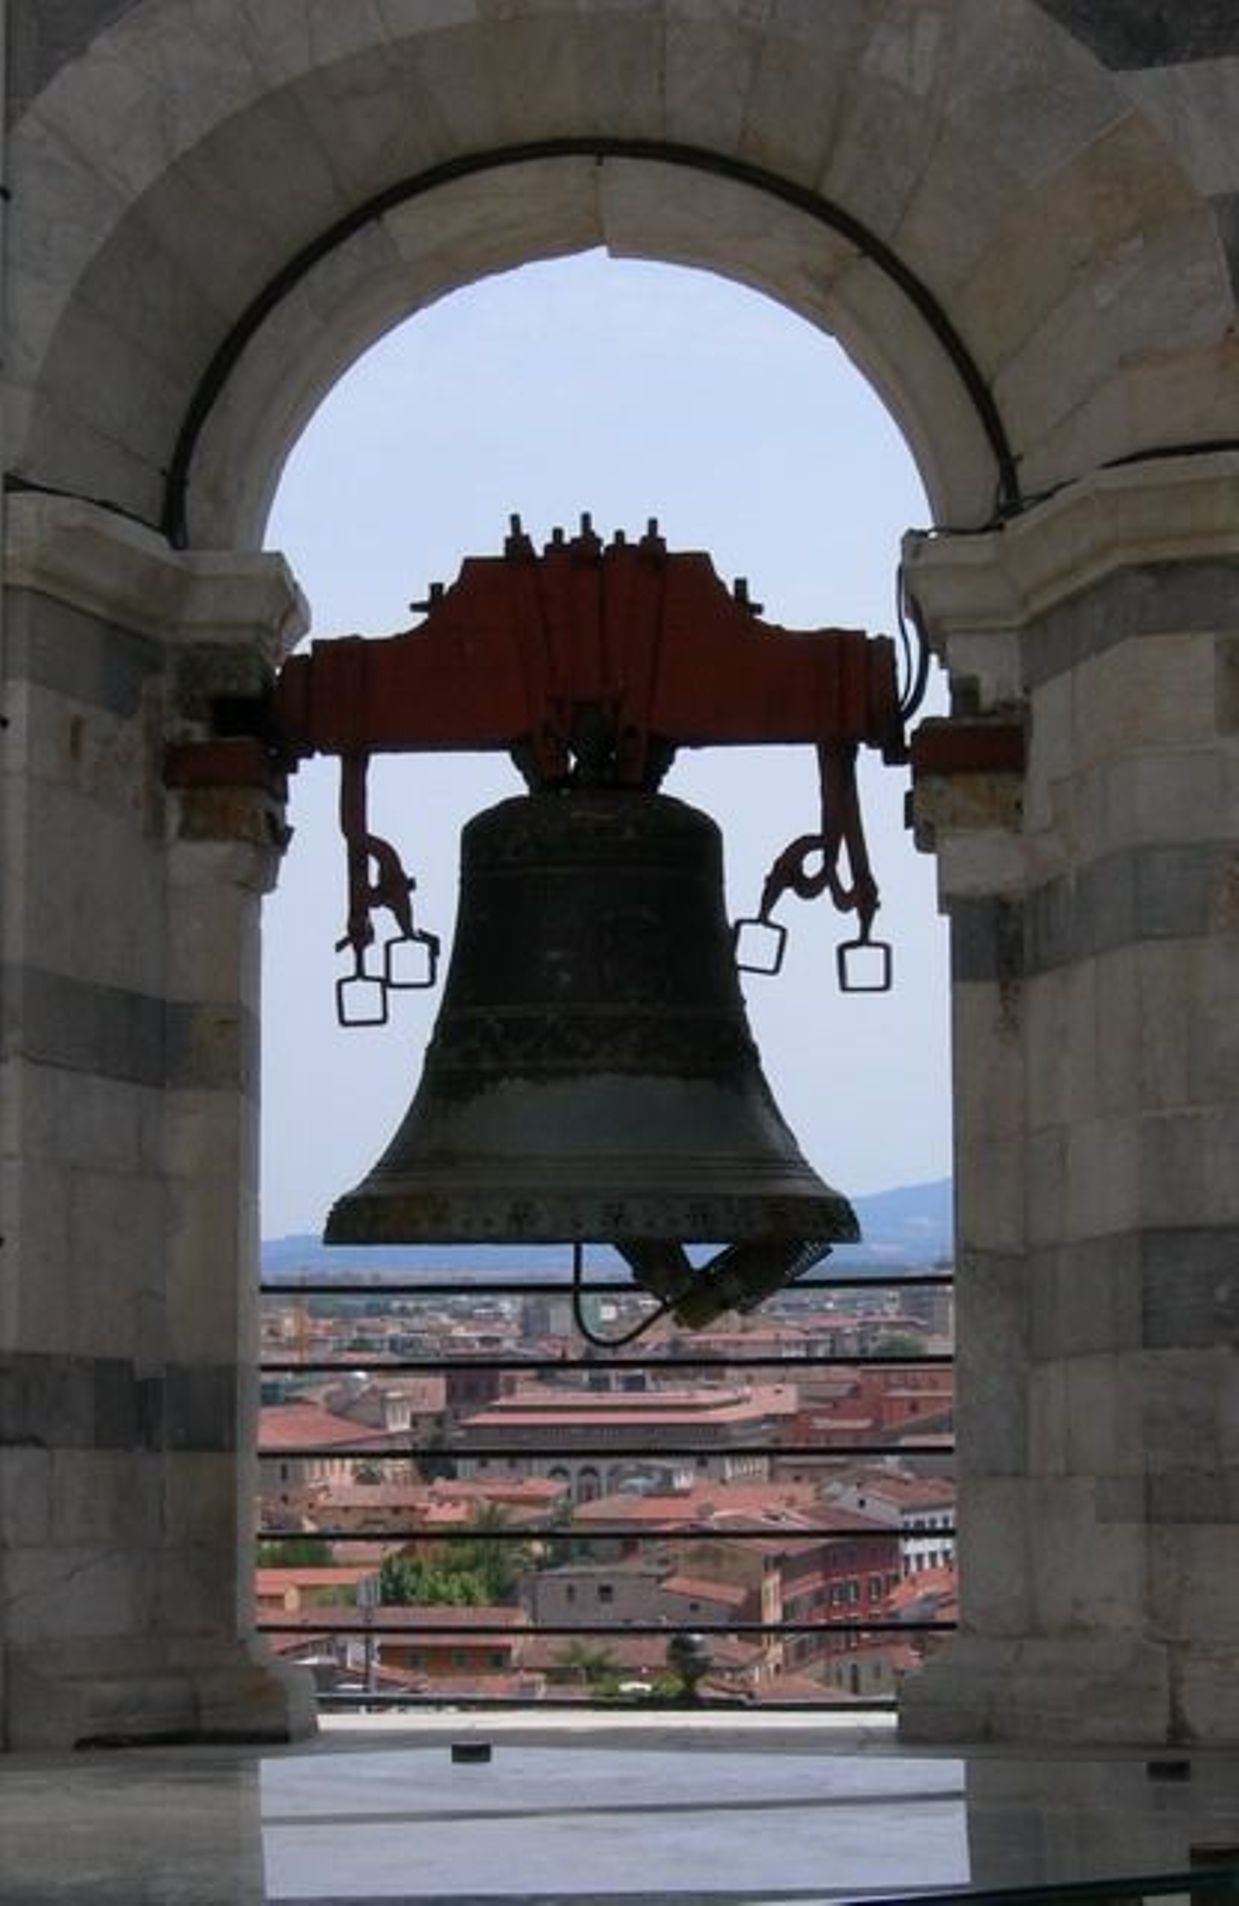 La Tour de Pise est avant tout un campanile destiné à accueillir des cloches